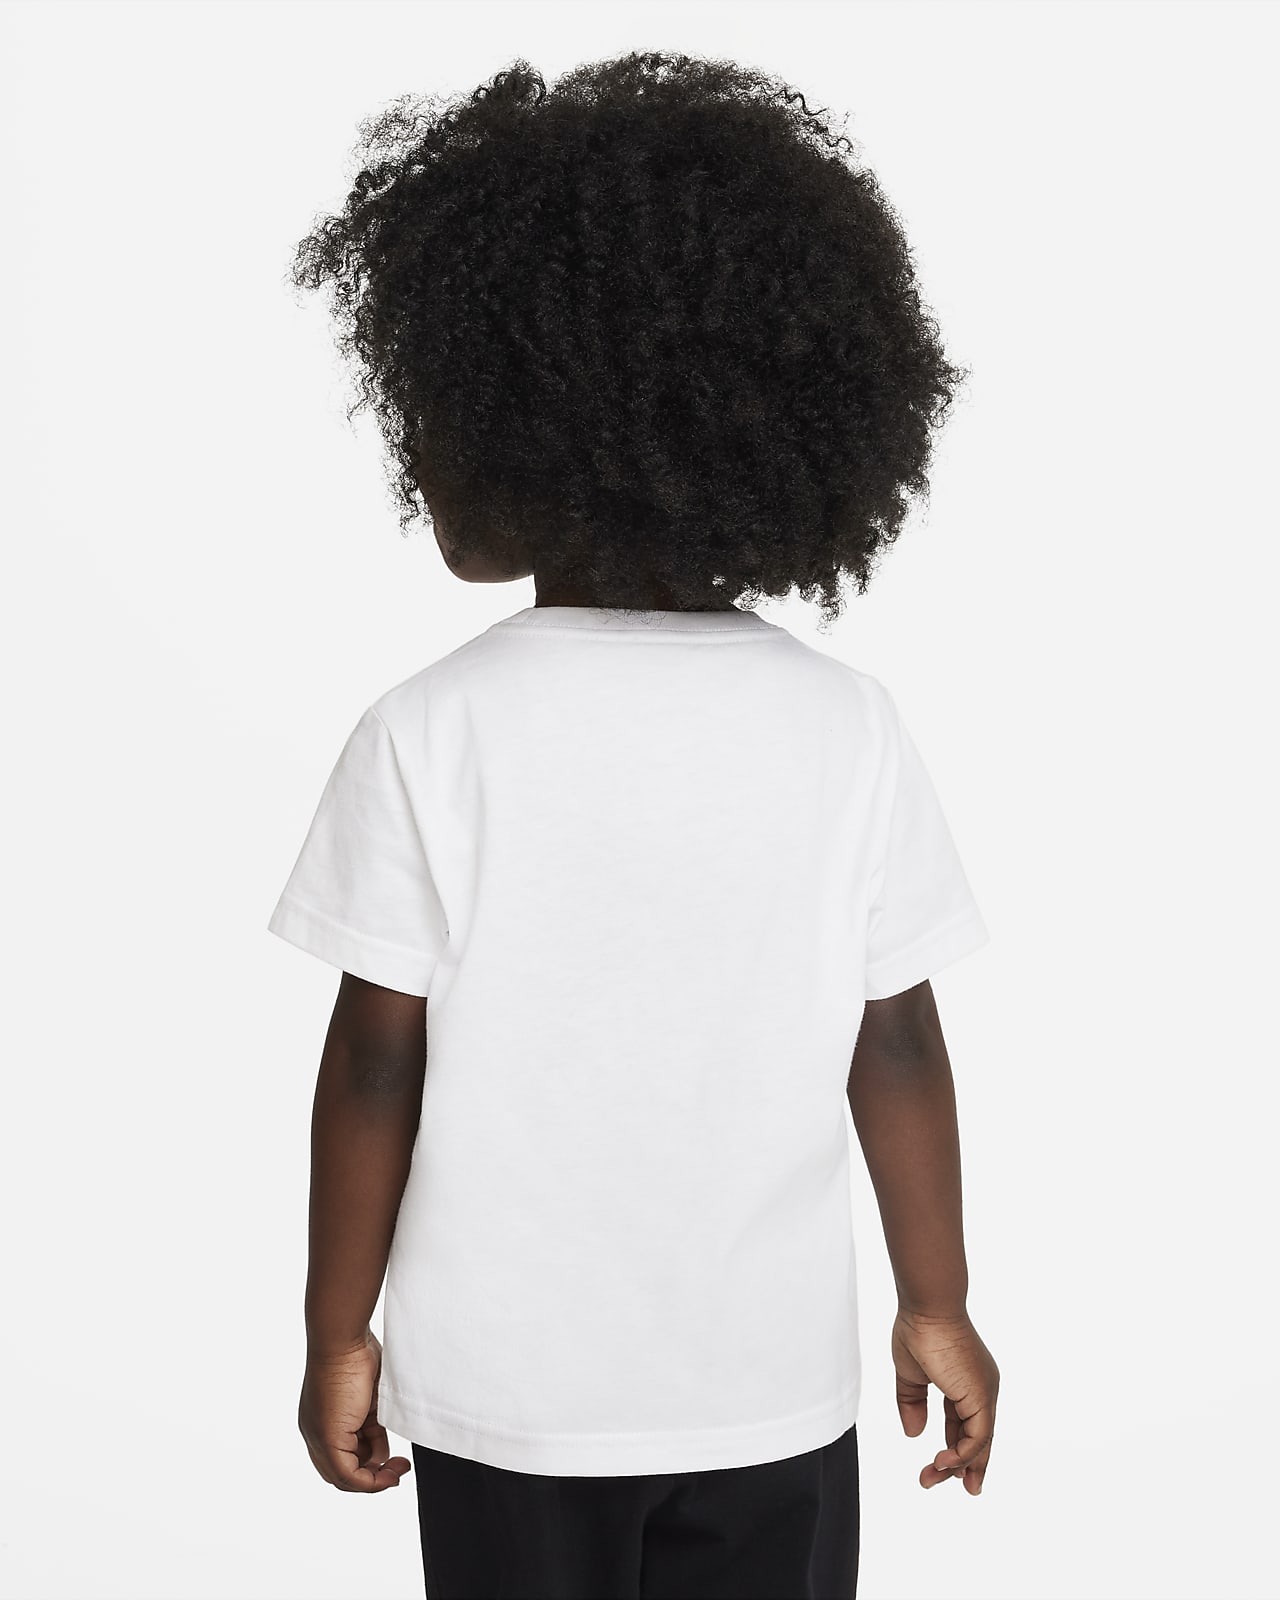 T-shirt Nike Air Balloon Tee pour enfant. Nike LU